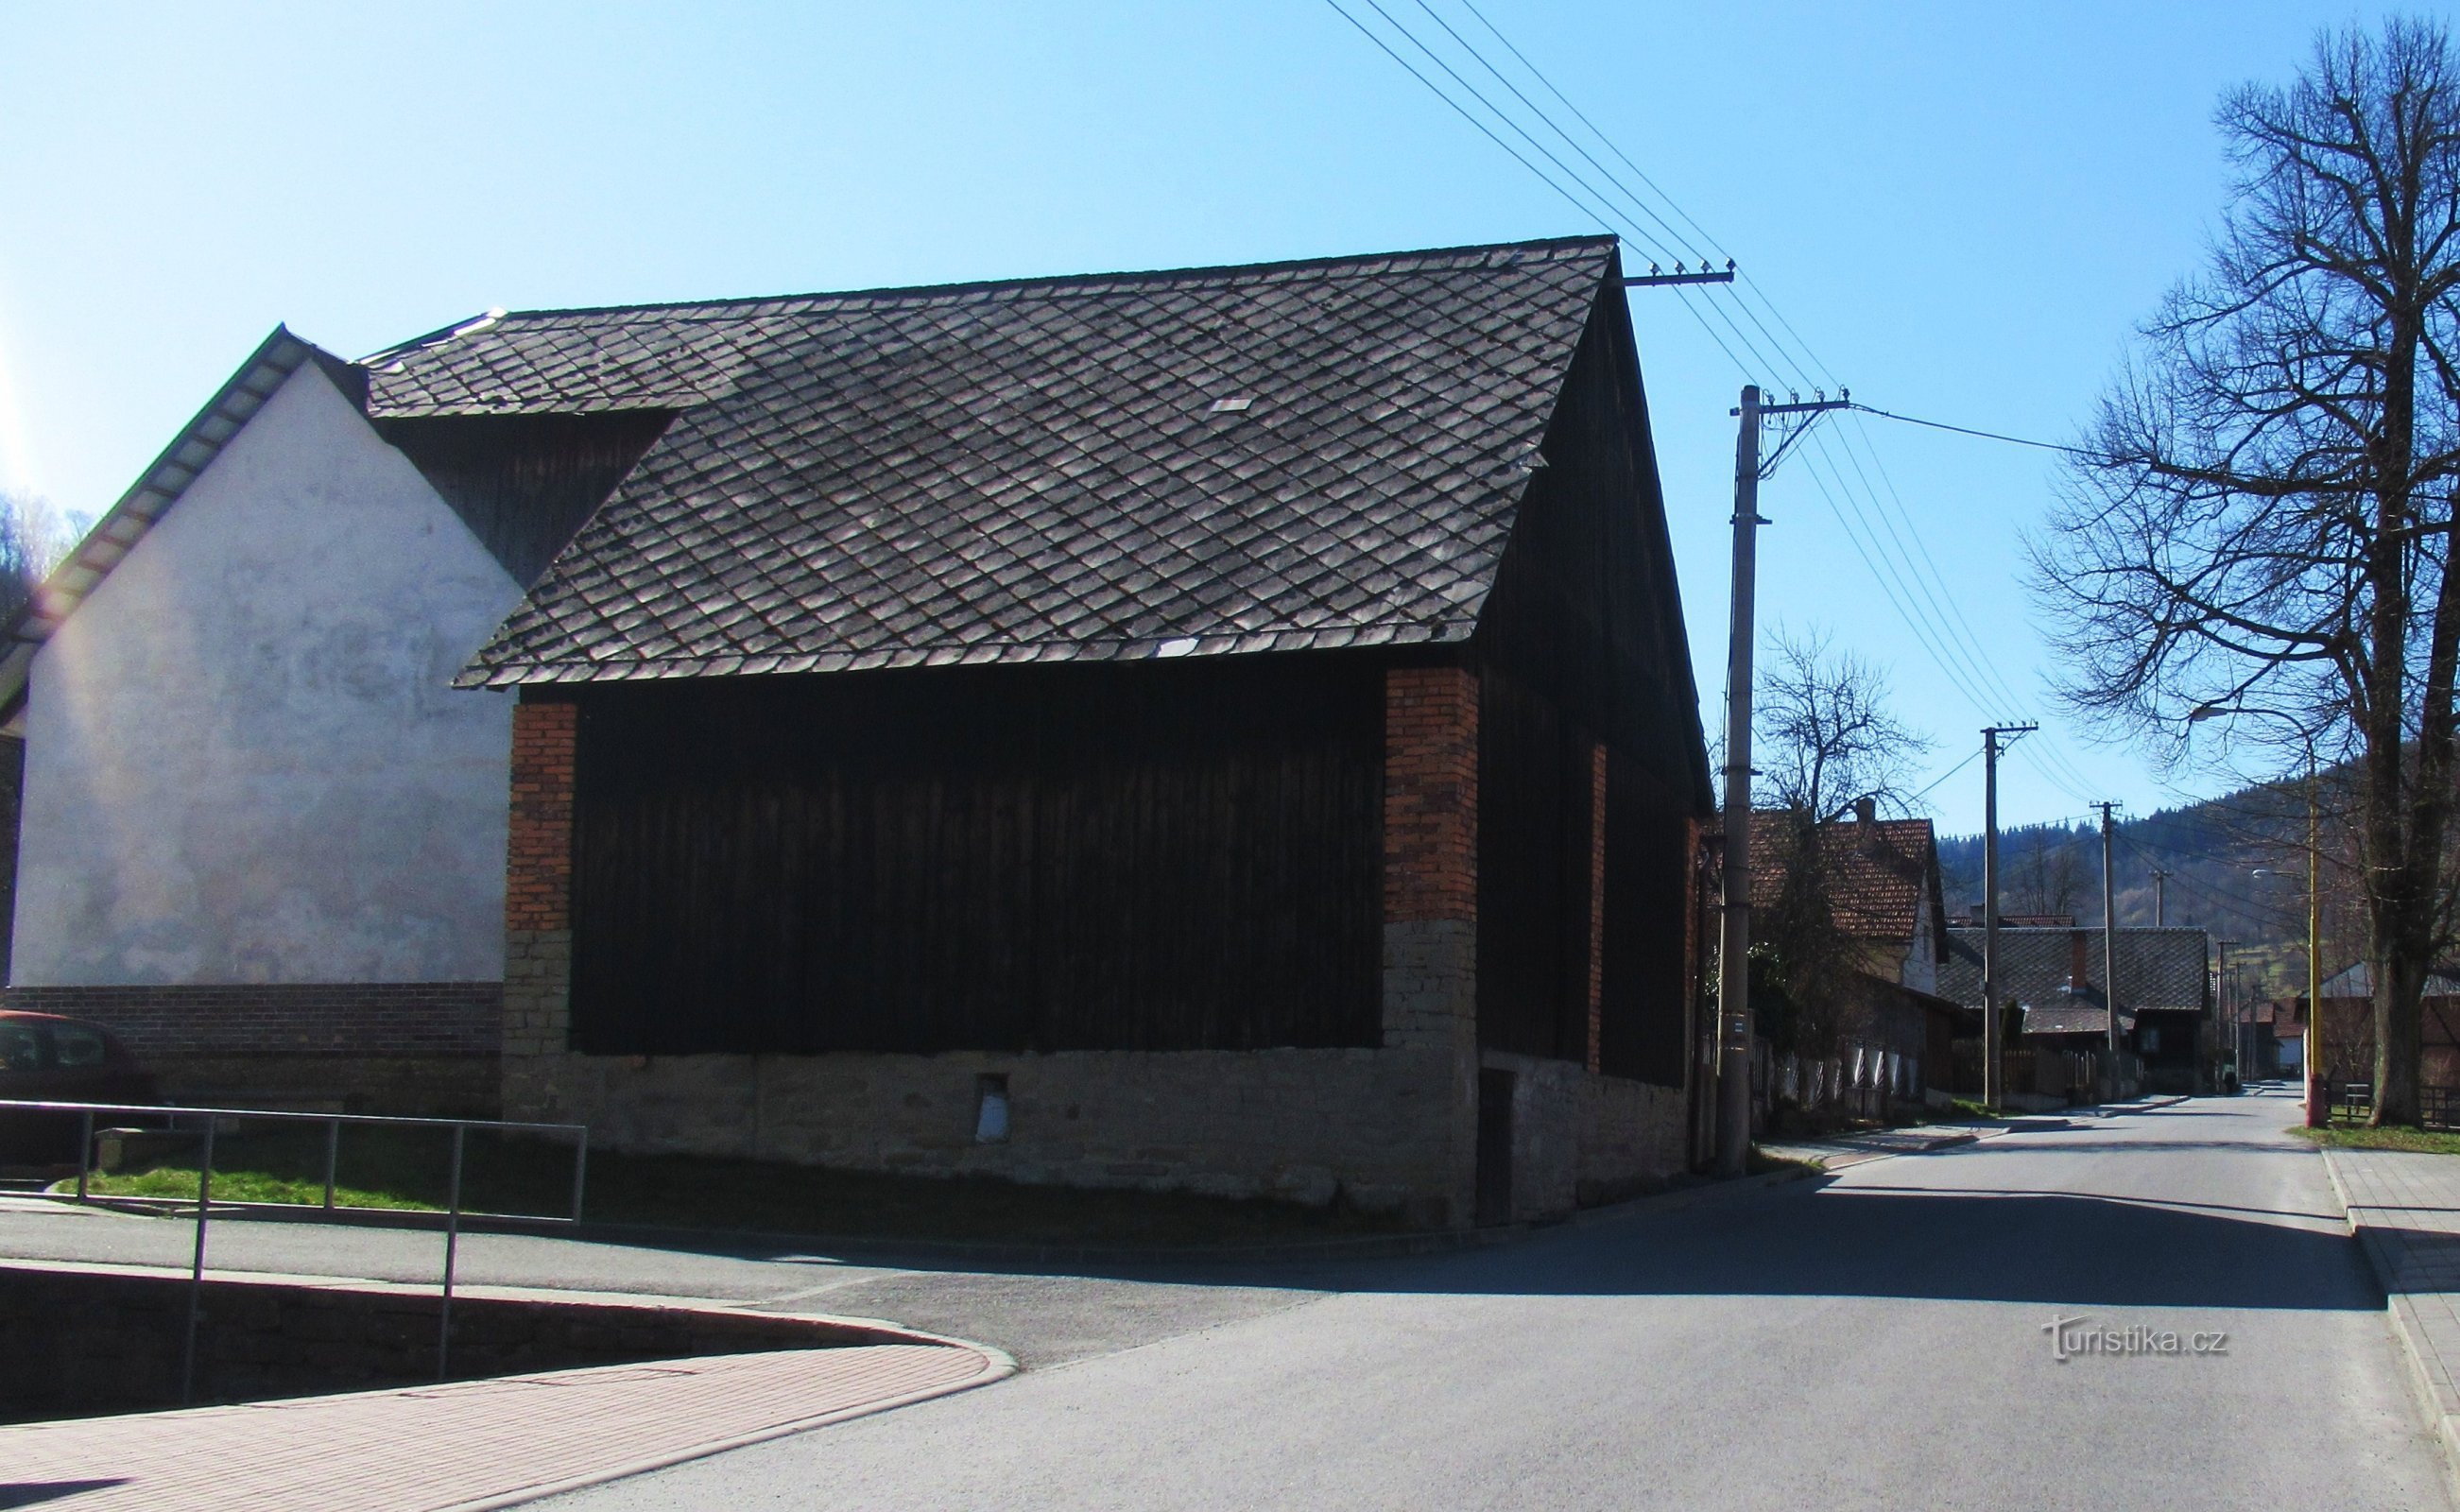 Het dorp Zděchov in Walachije